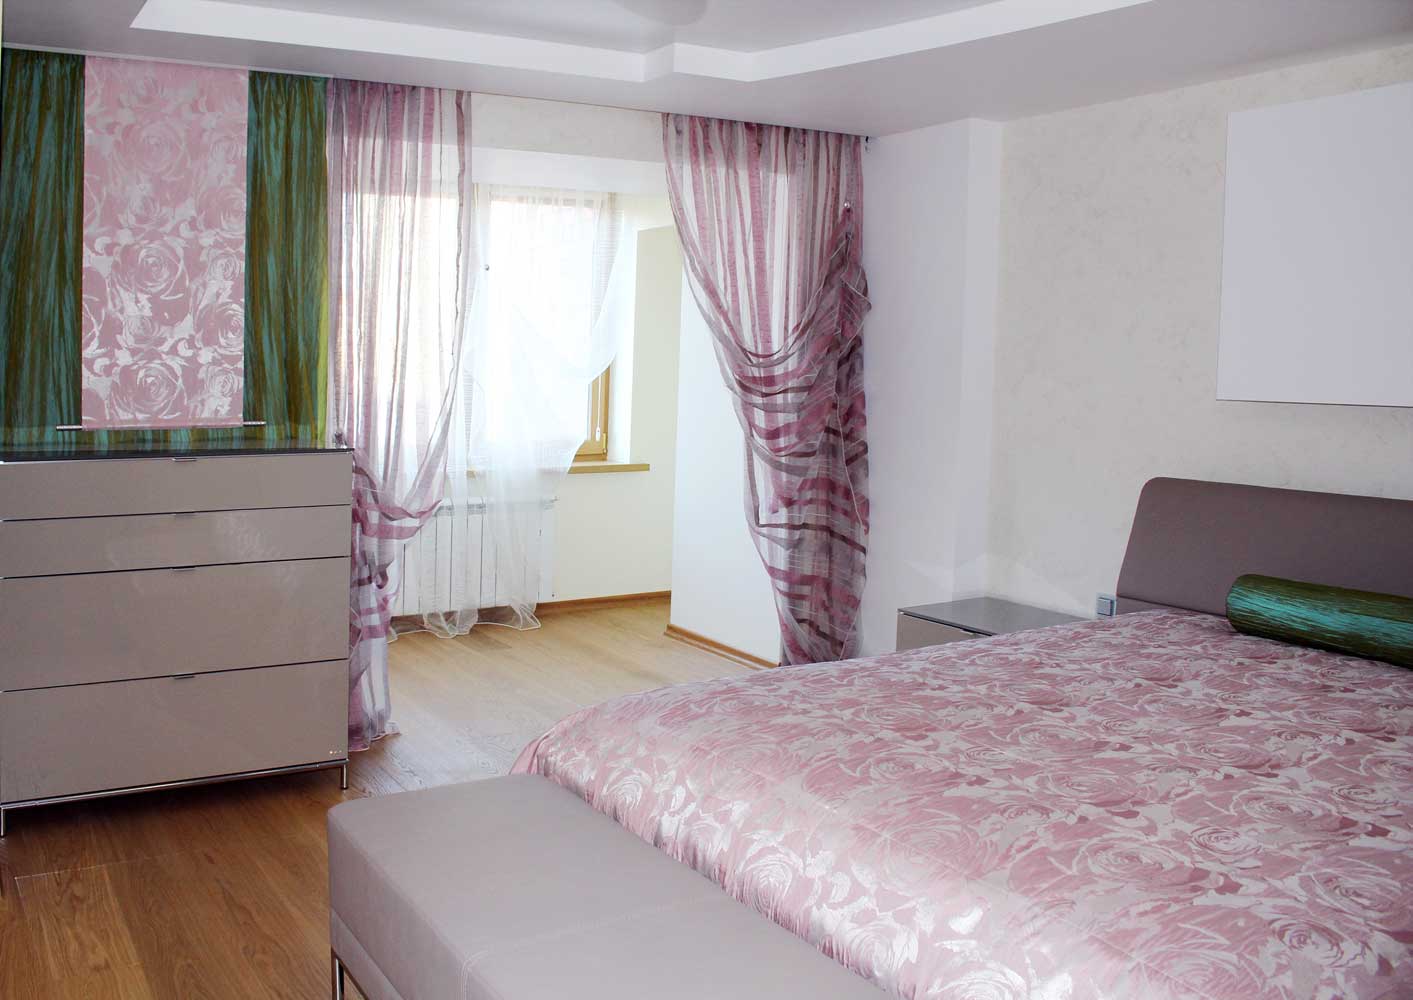 Прозрачные легкие занавески и декоративная панель с розами вбольшой спальне